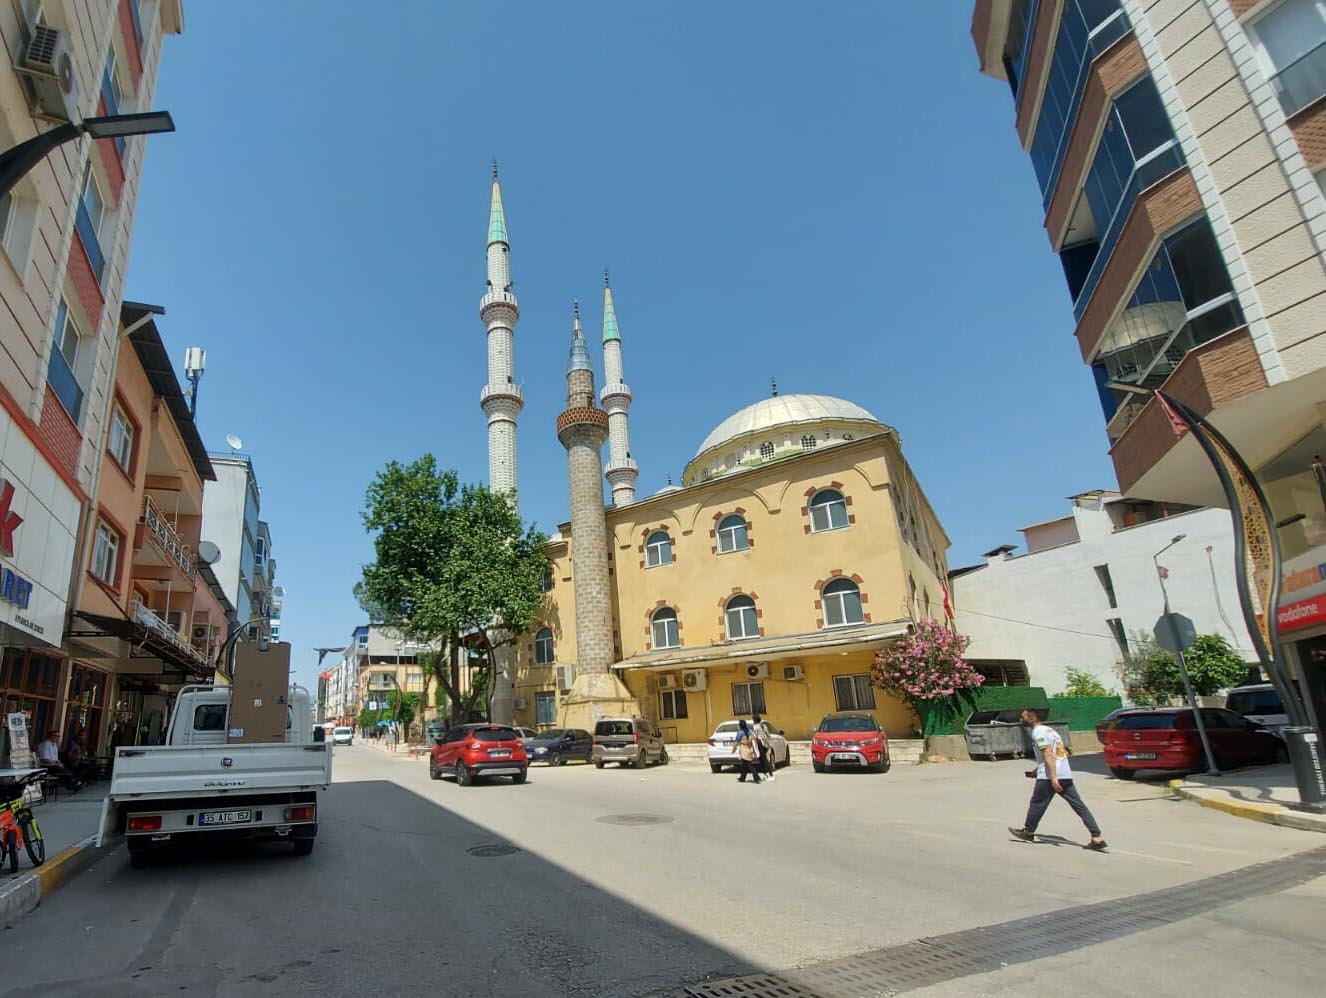 İzmir'de cami hoparlöründen müzik yayını yaptığı öne sürülen kişi yakalandı